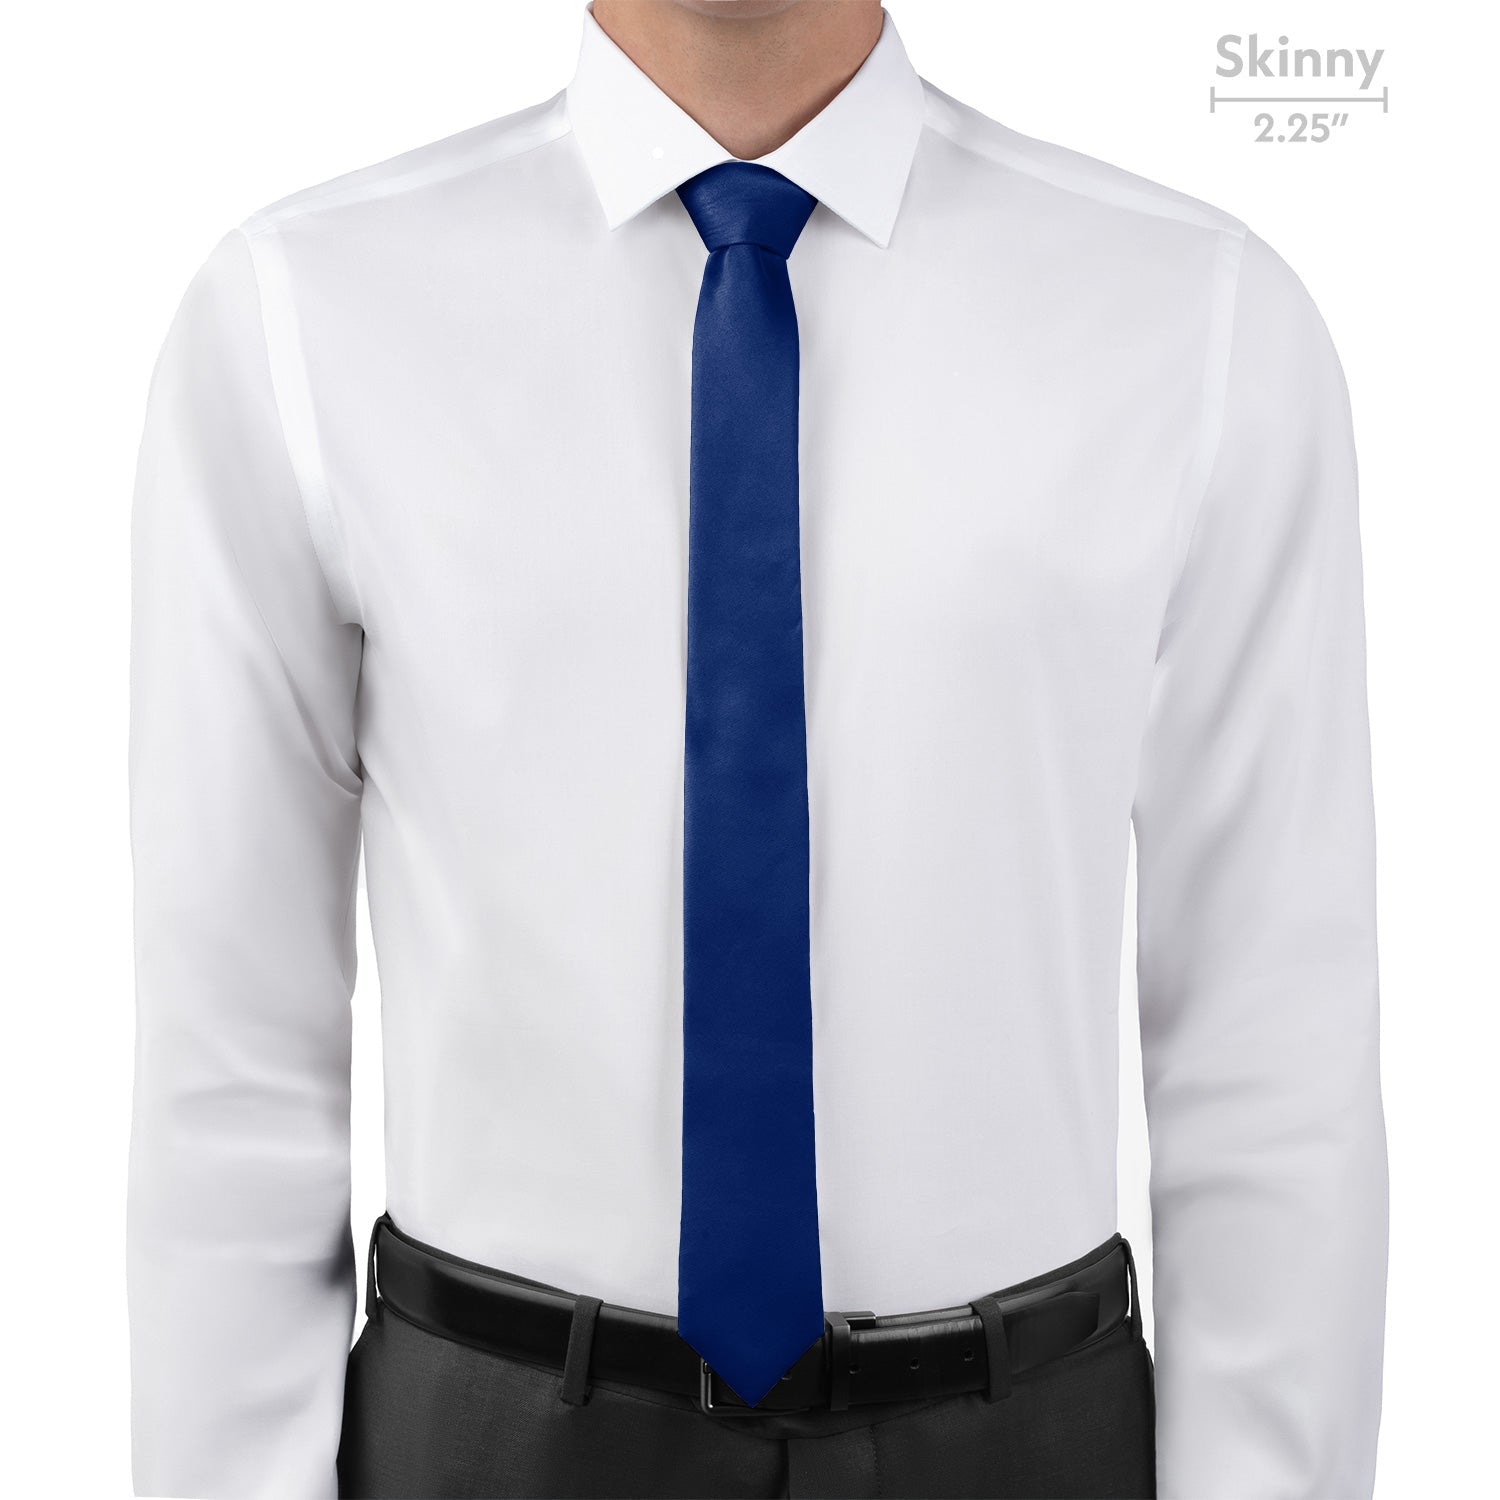 Azazie Navy Blue Necktie - Skinny - Knotty Tie Co.